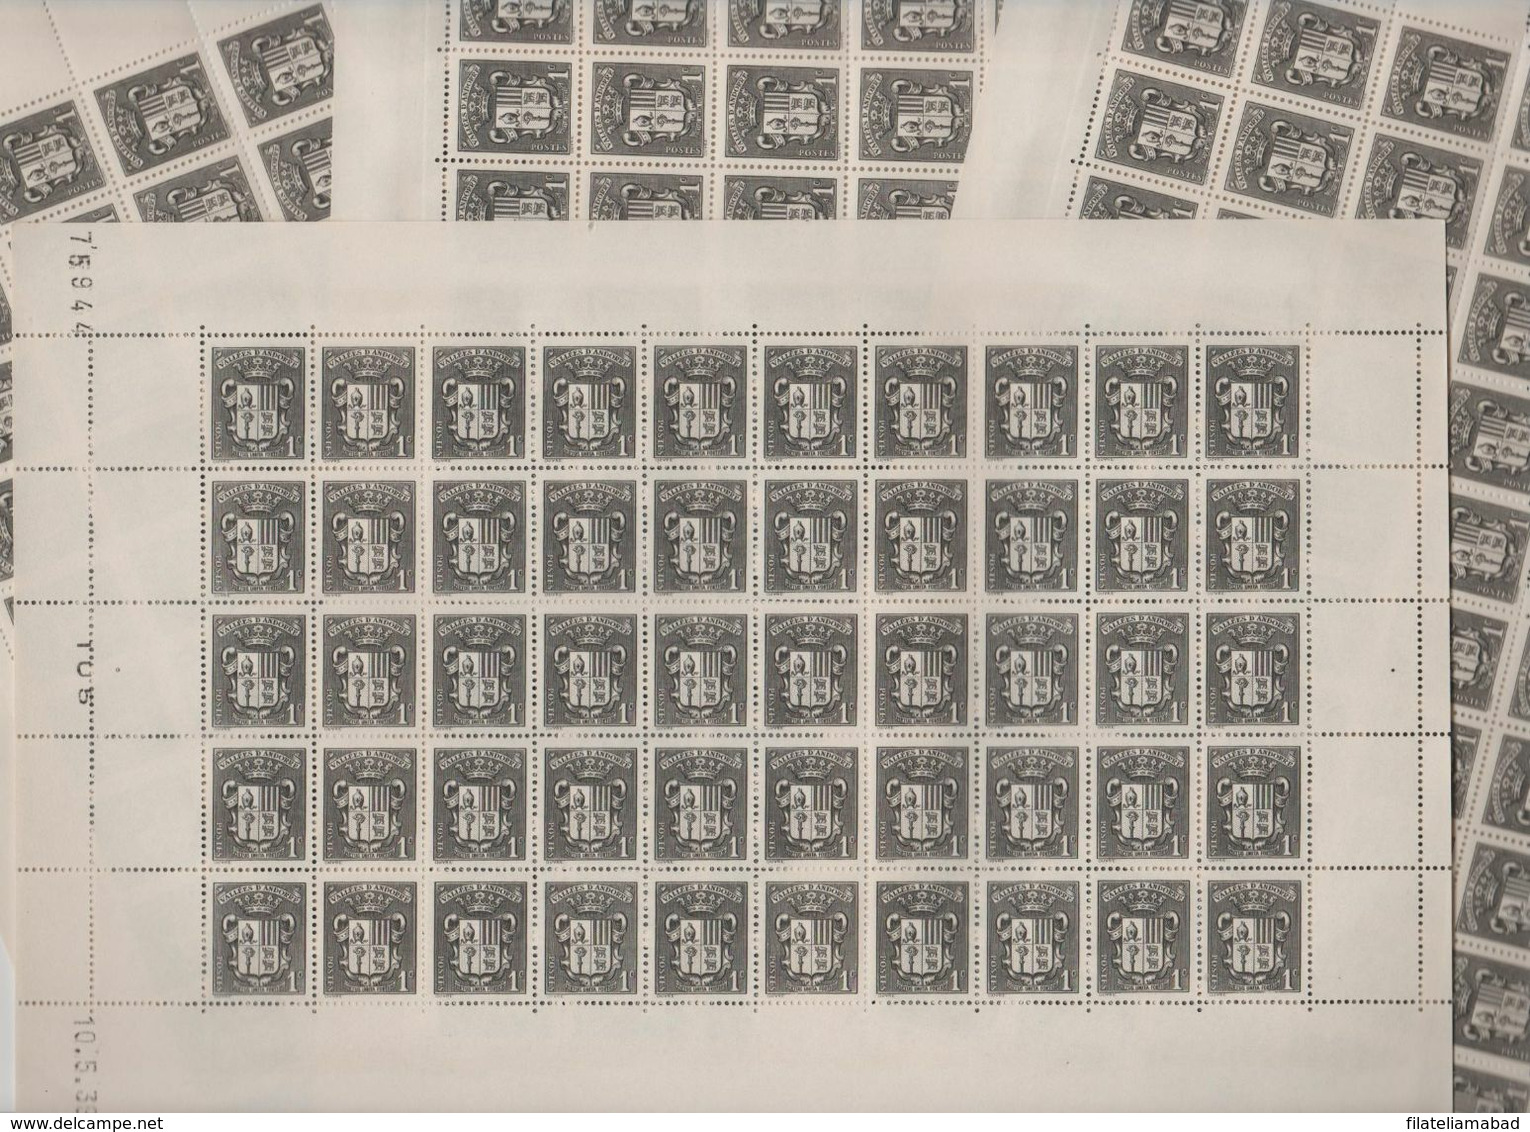 ANDORRA CORREO F..200 SELLOS Nº 47 DEL AÑO 1937-43 EN MUY NUEN ESTADO C. 100,00€  (C.H) - Blocks & Sheetlets